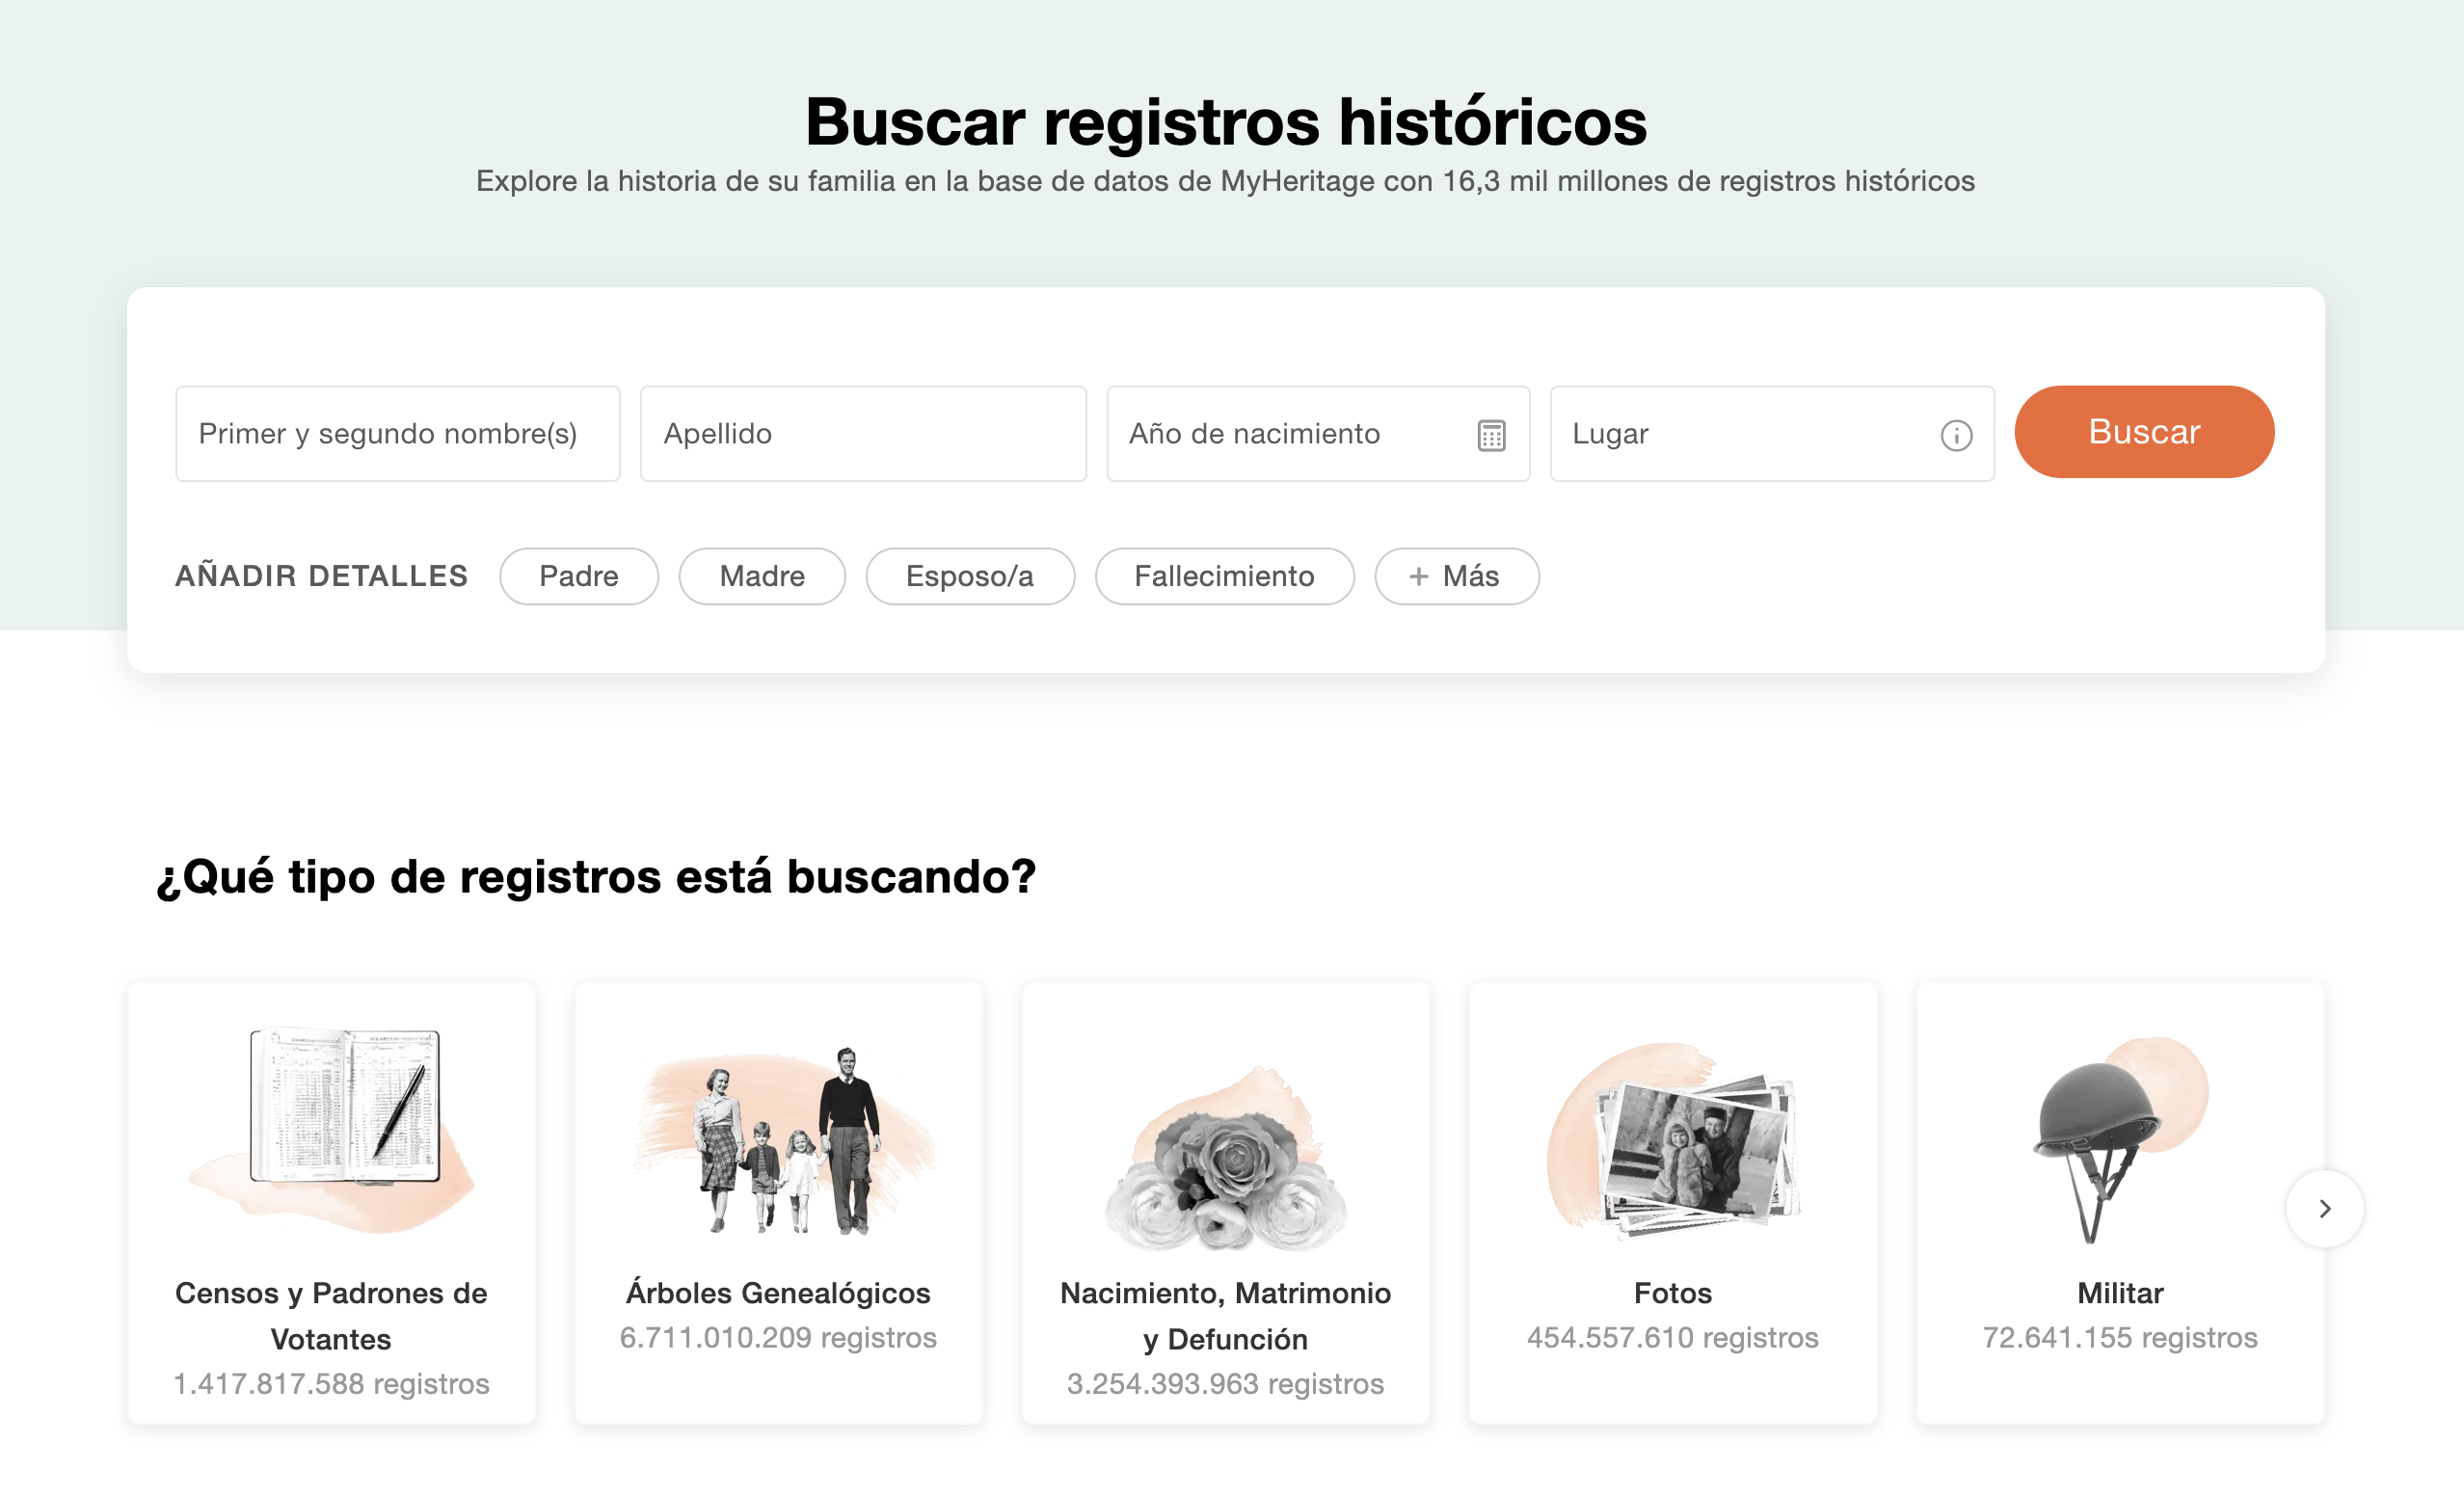 La pantalla inicial de búsqueda de registros en MyHeritage